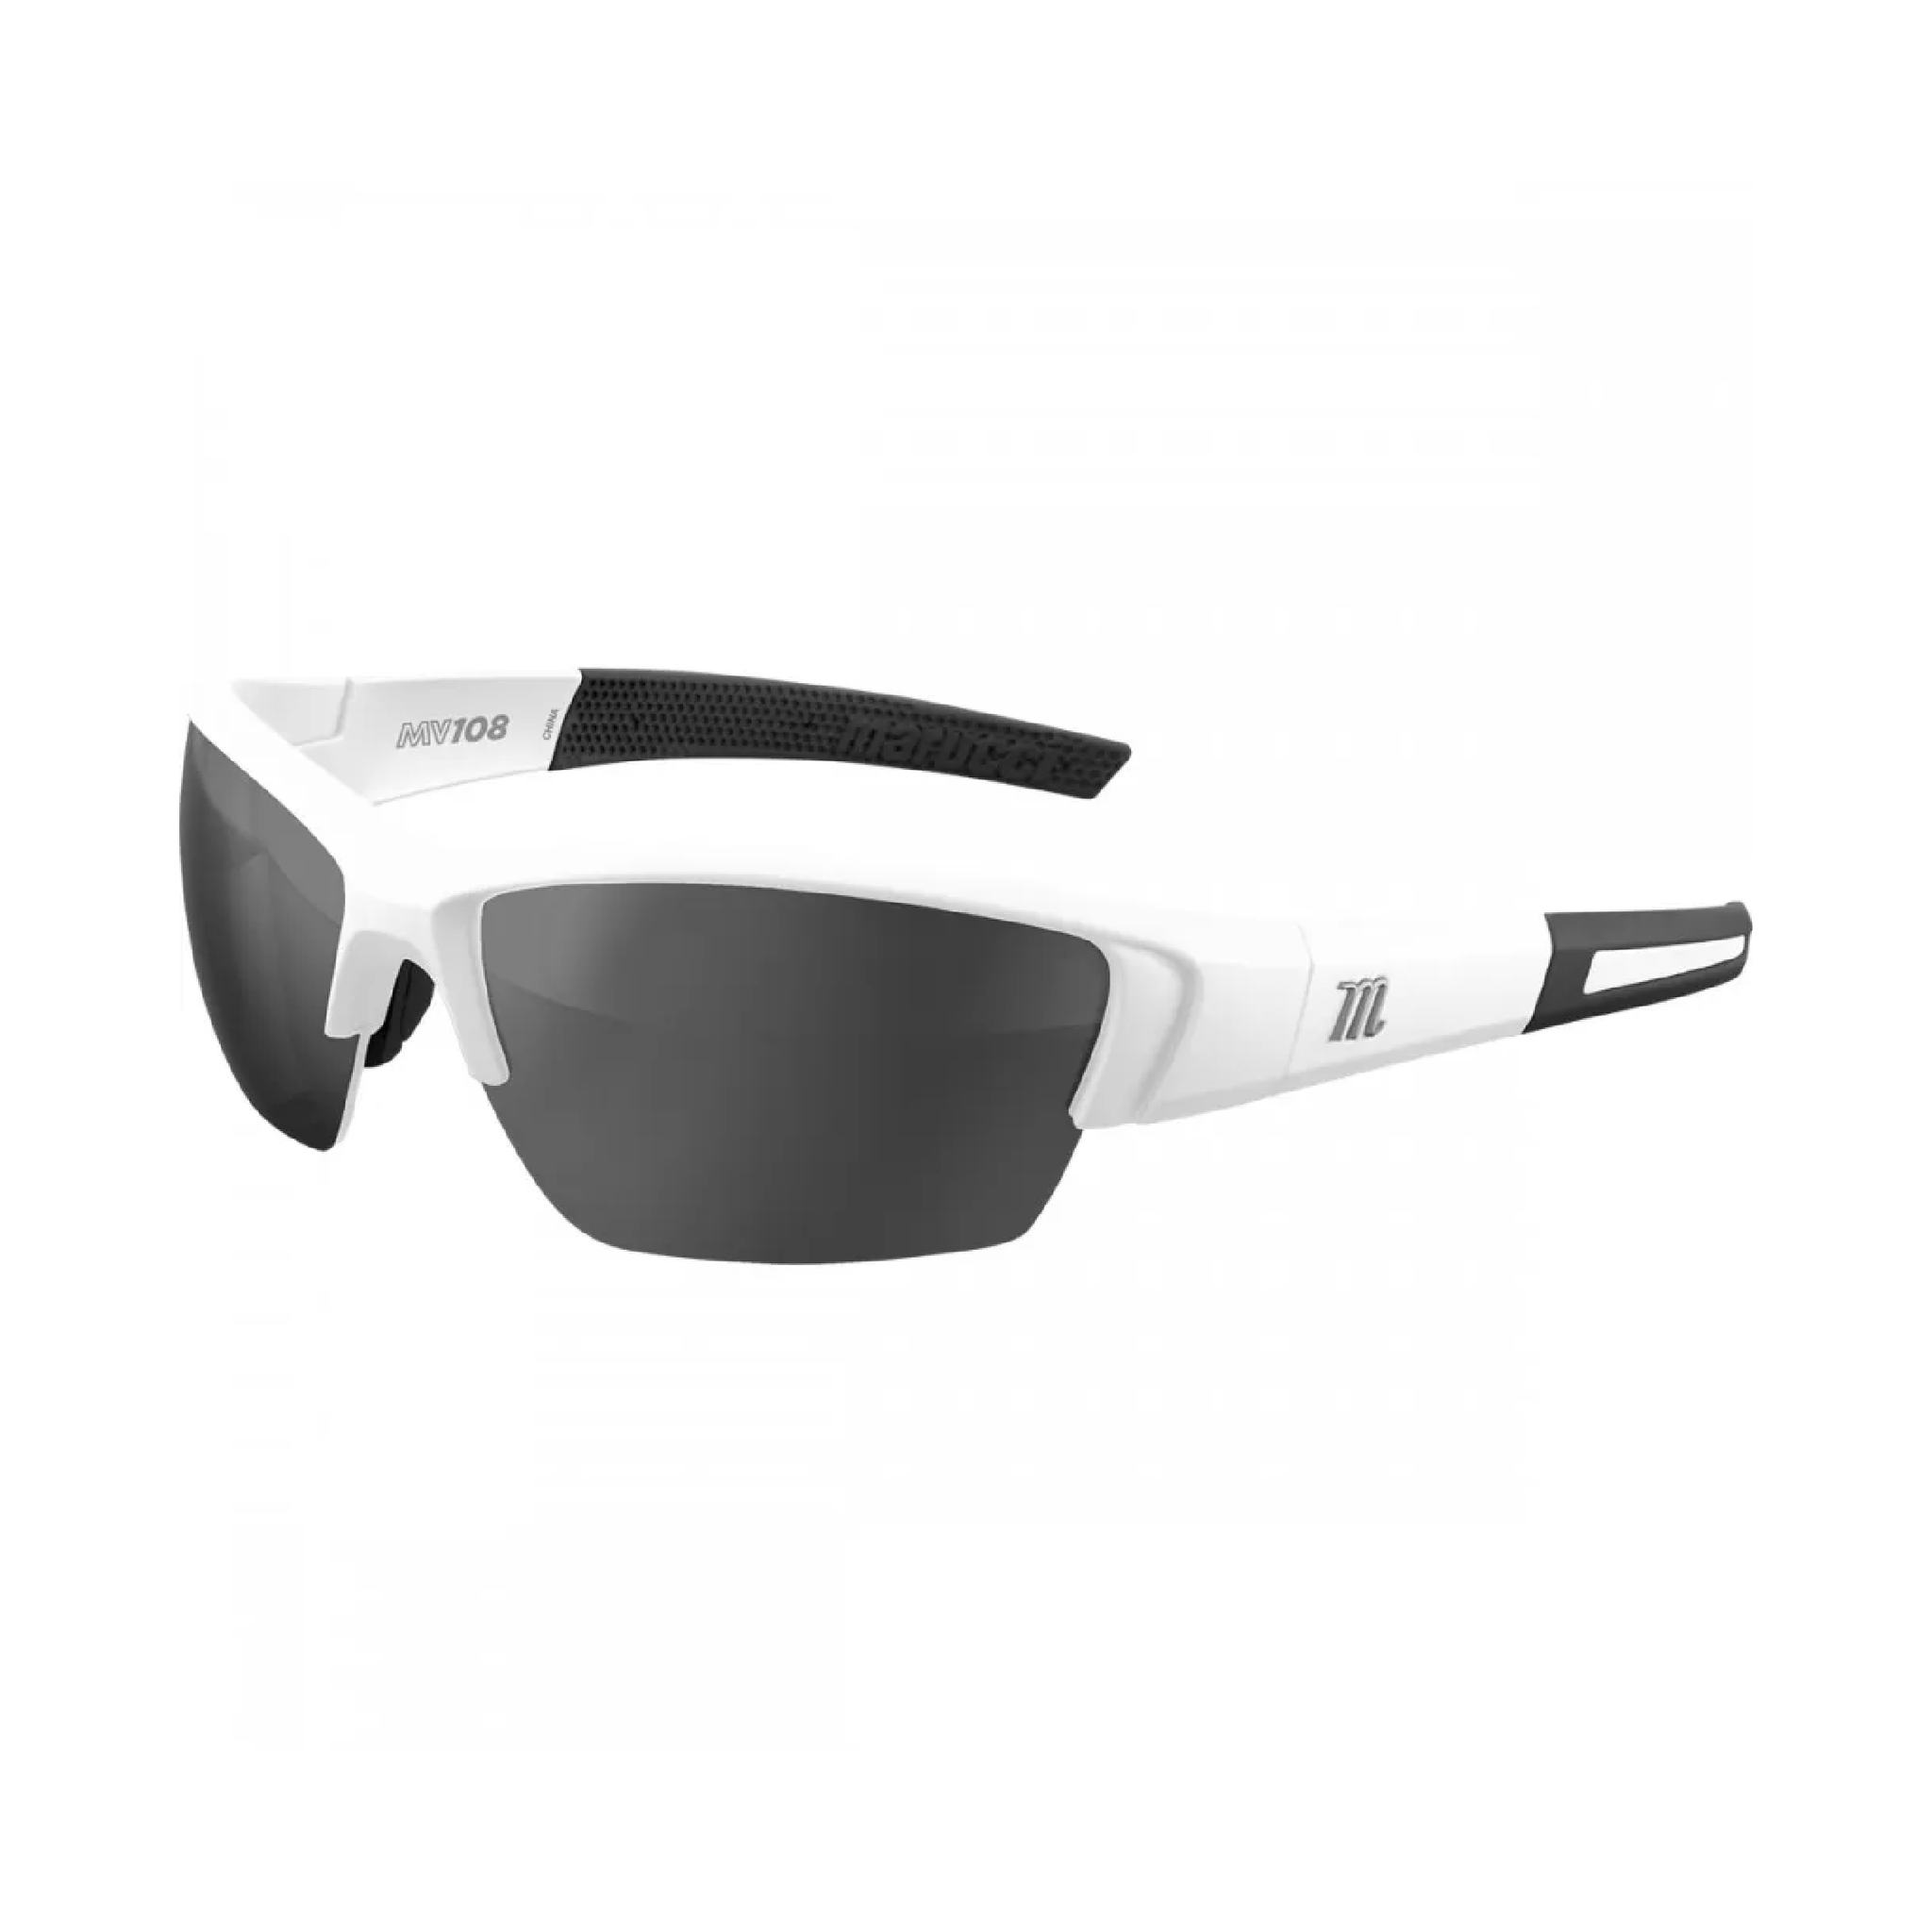 Marucci MV108 Performance Sunglasses